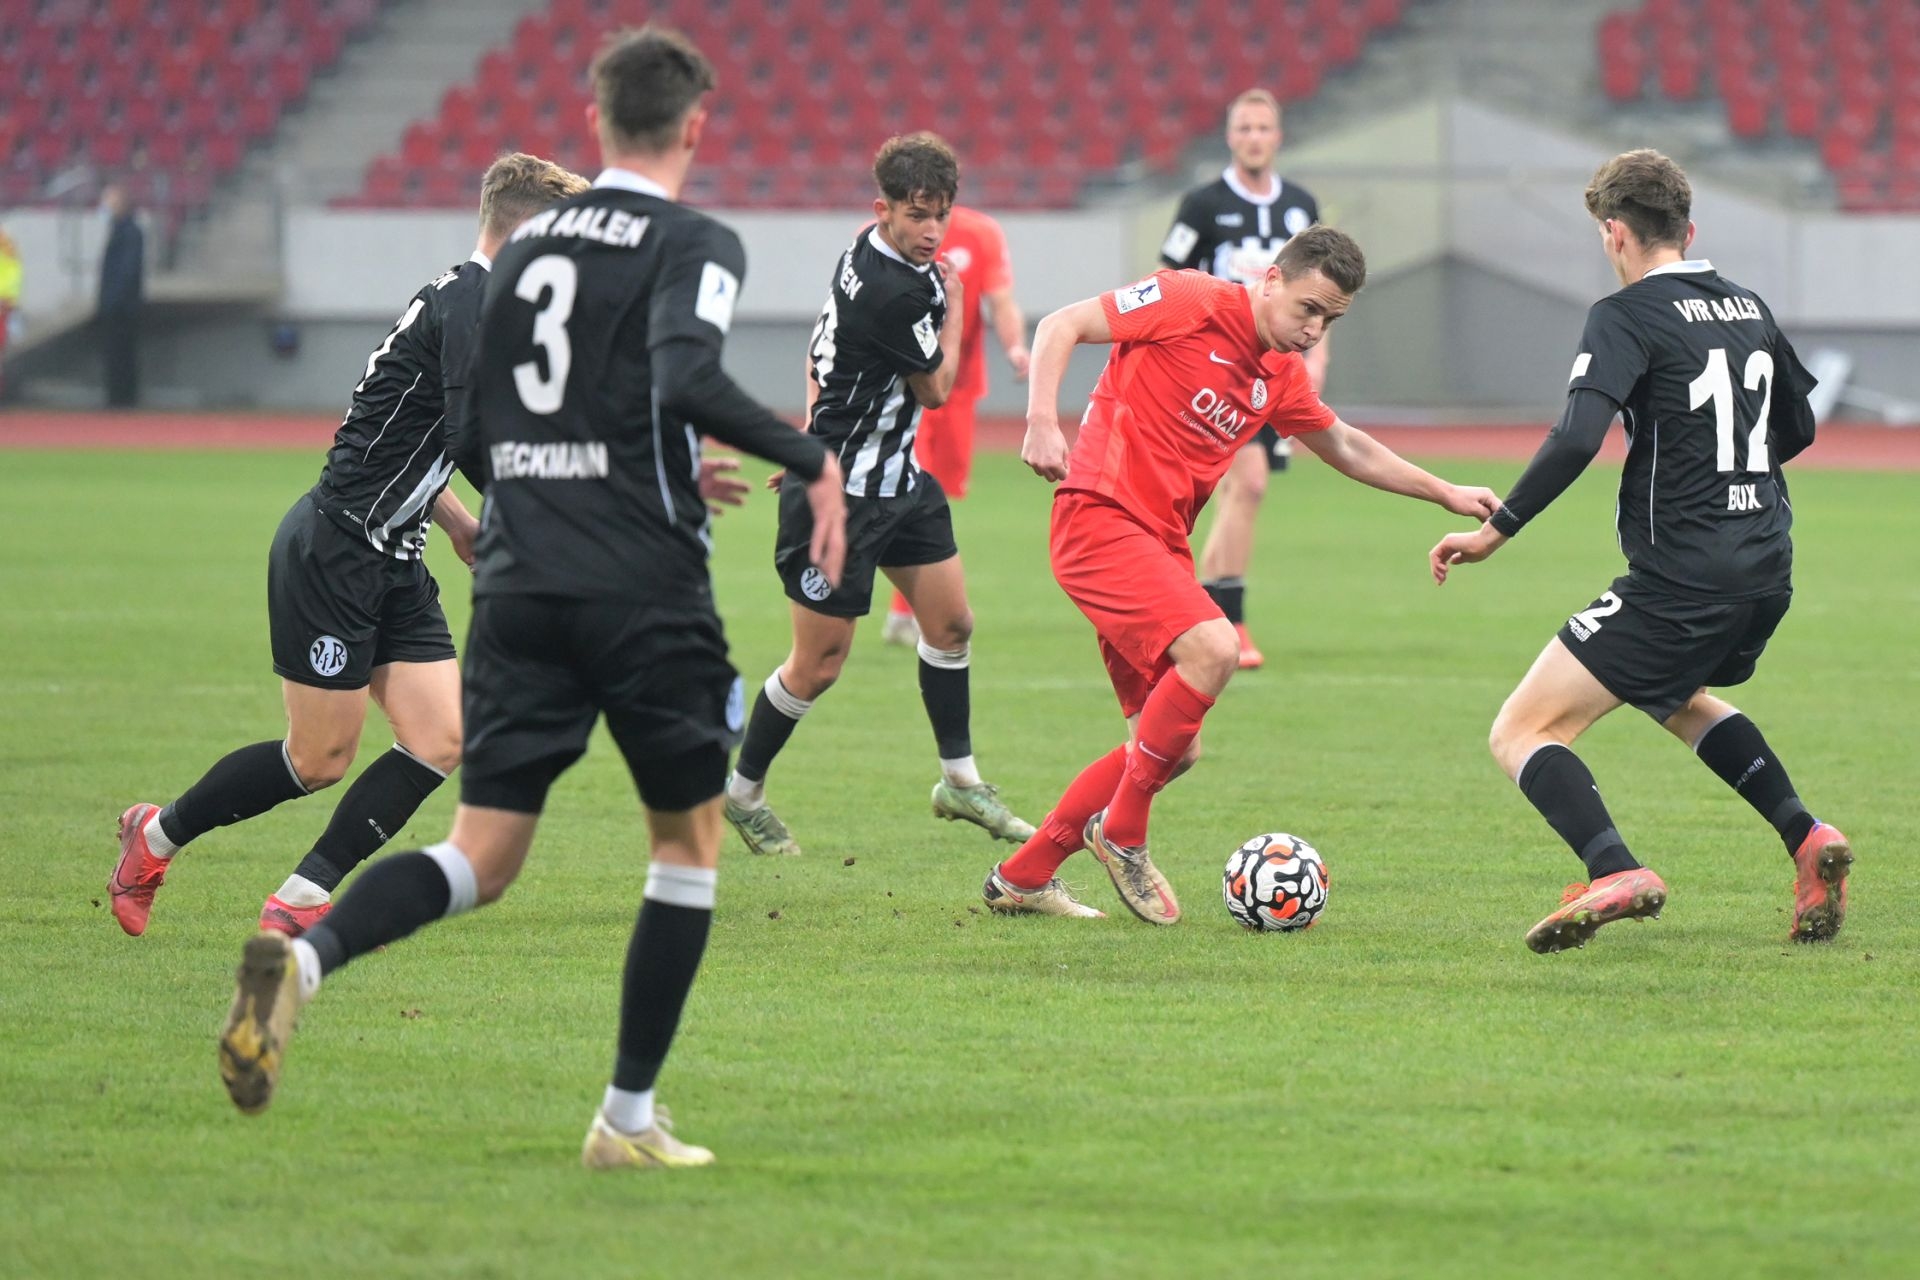 Regionalliga Südwest, Saison 2021/22, KSV Hessen Kassel, VfR Aalen, Endstand 1:2